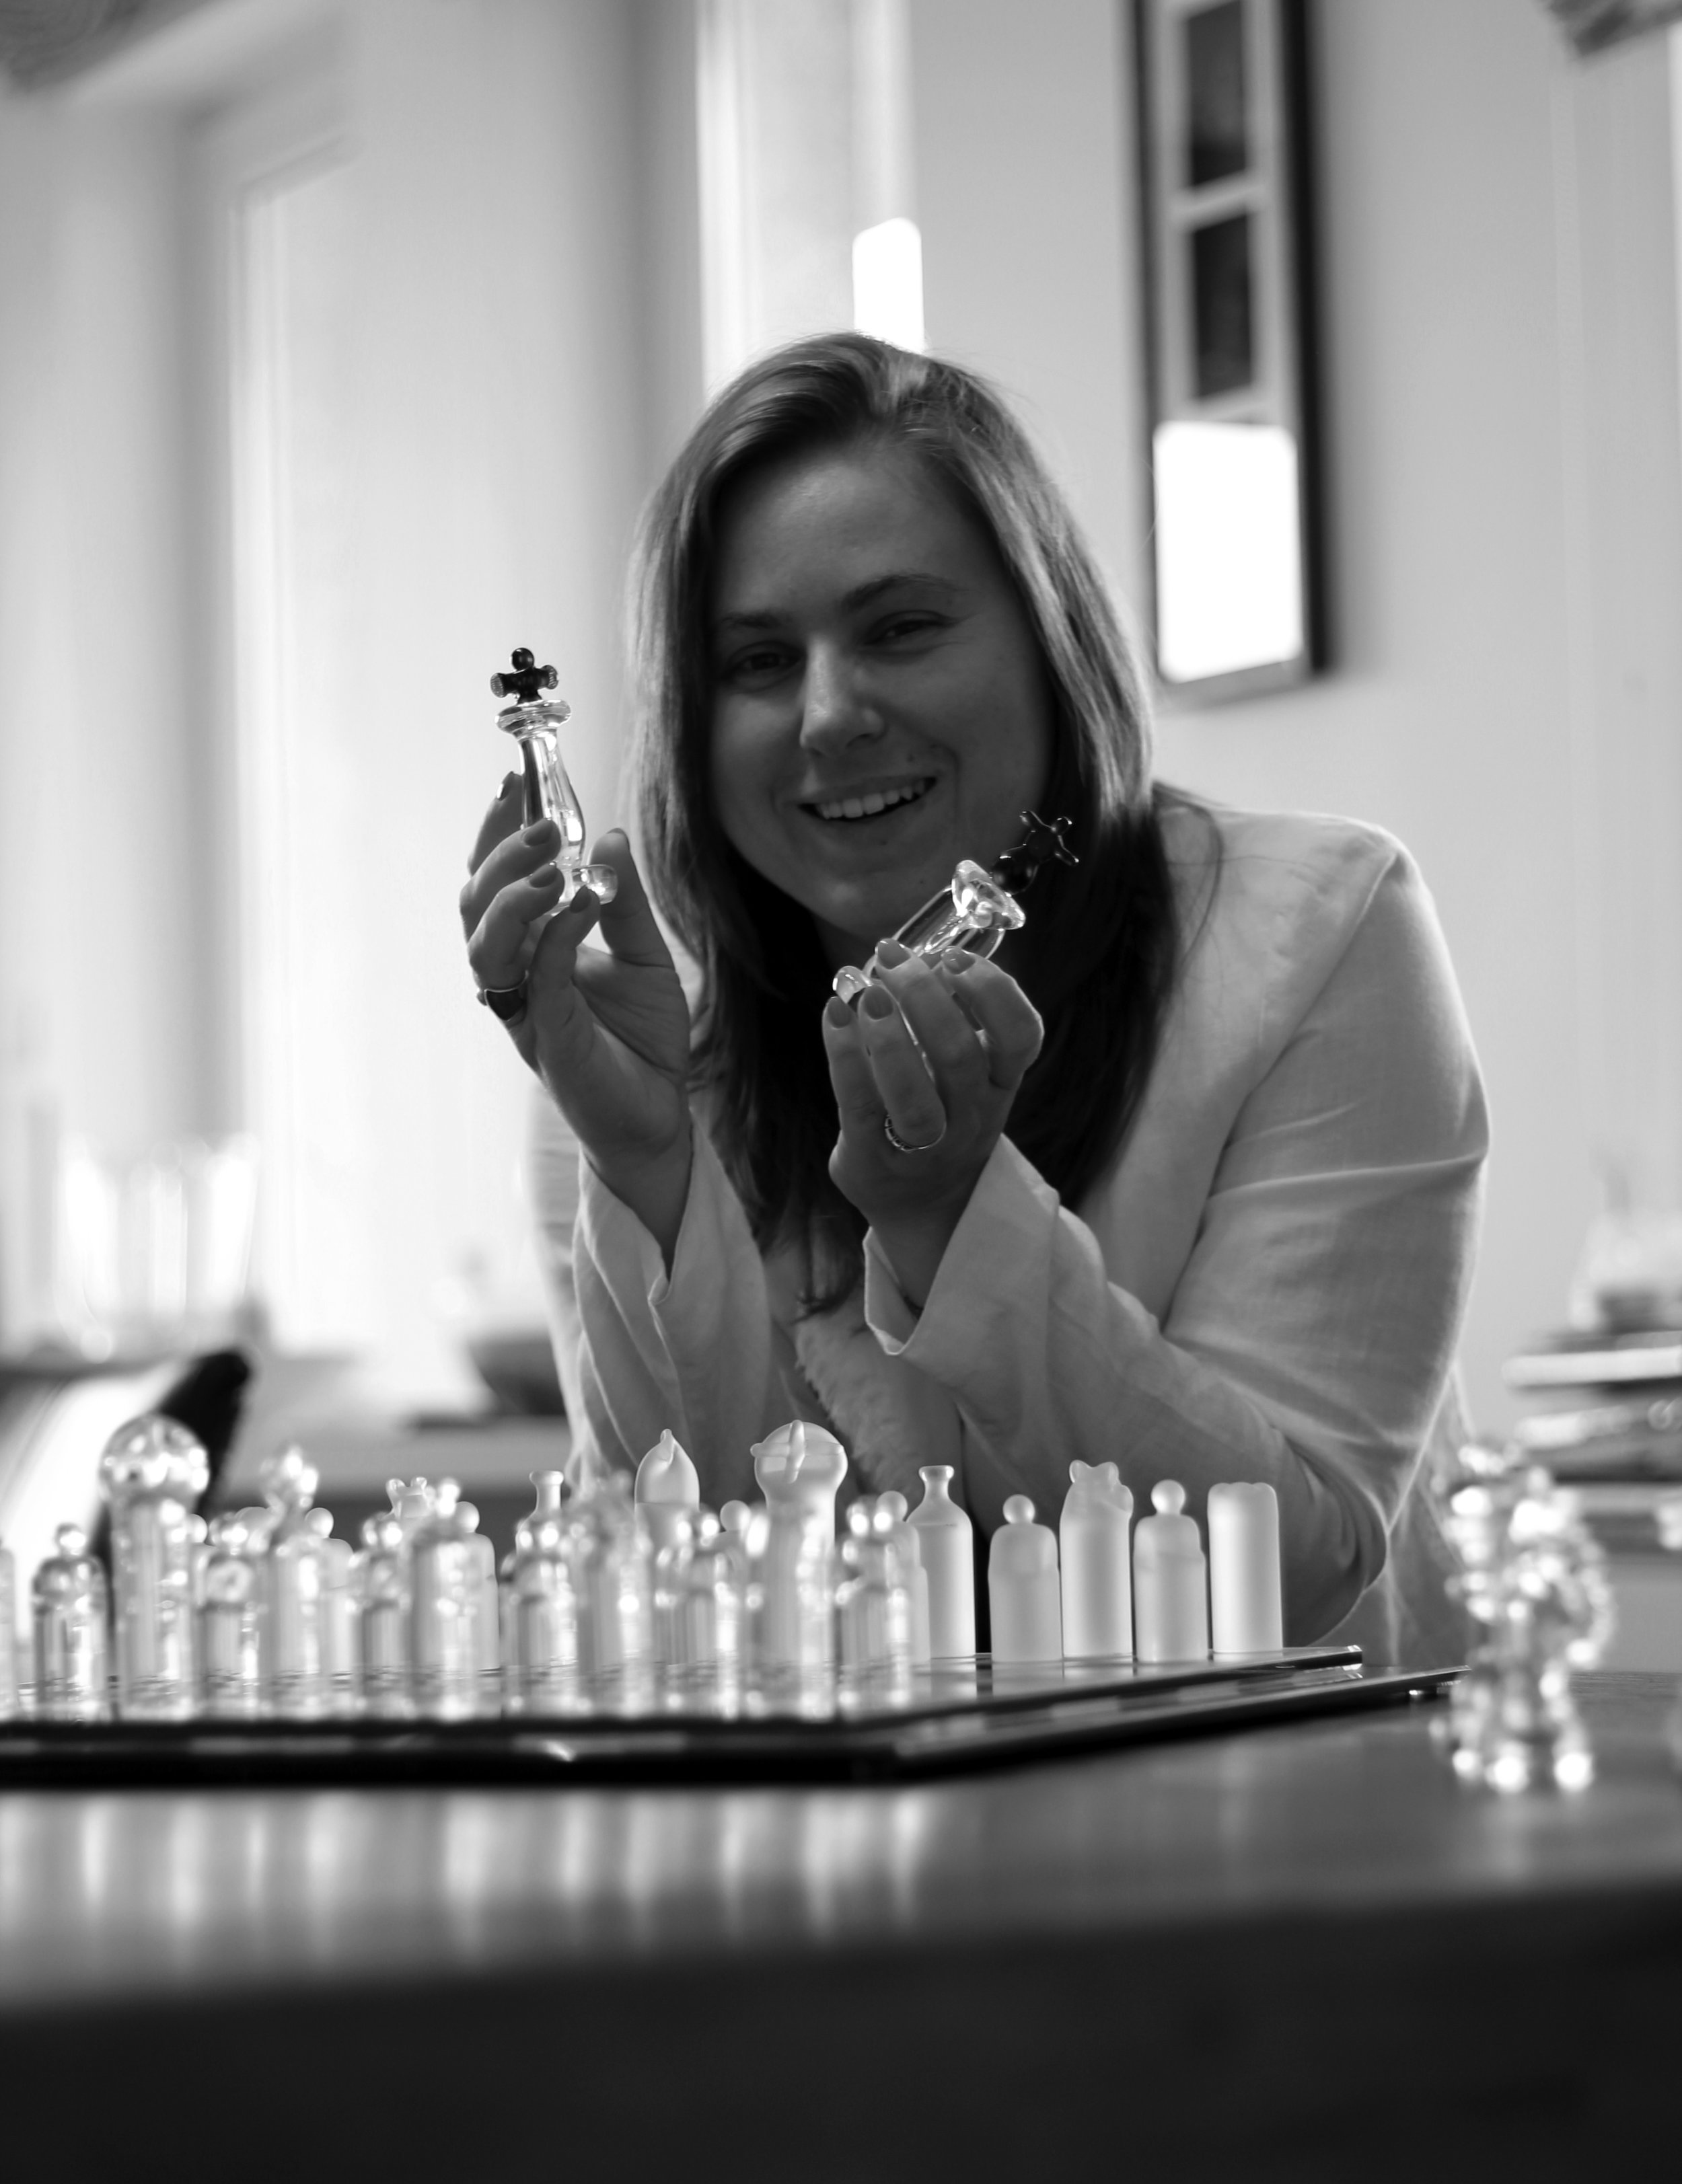 Prominent female chess player Judit Polgar retires